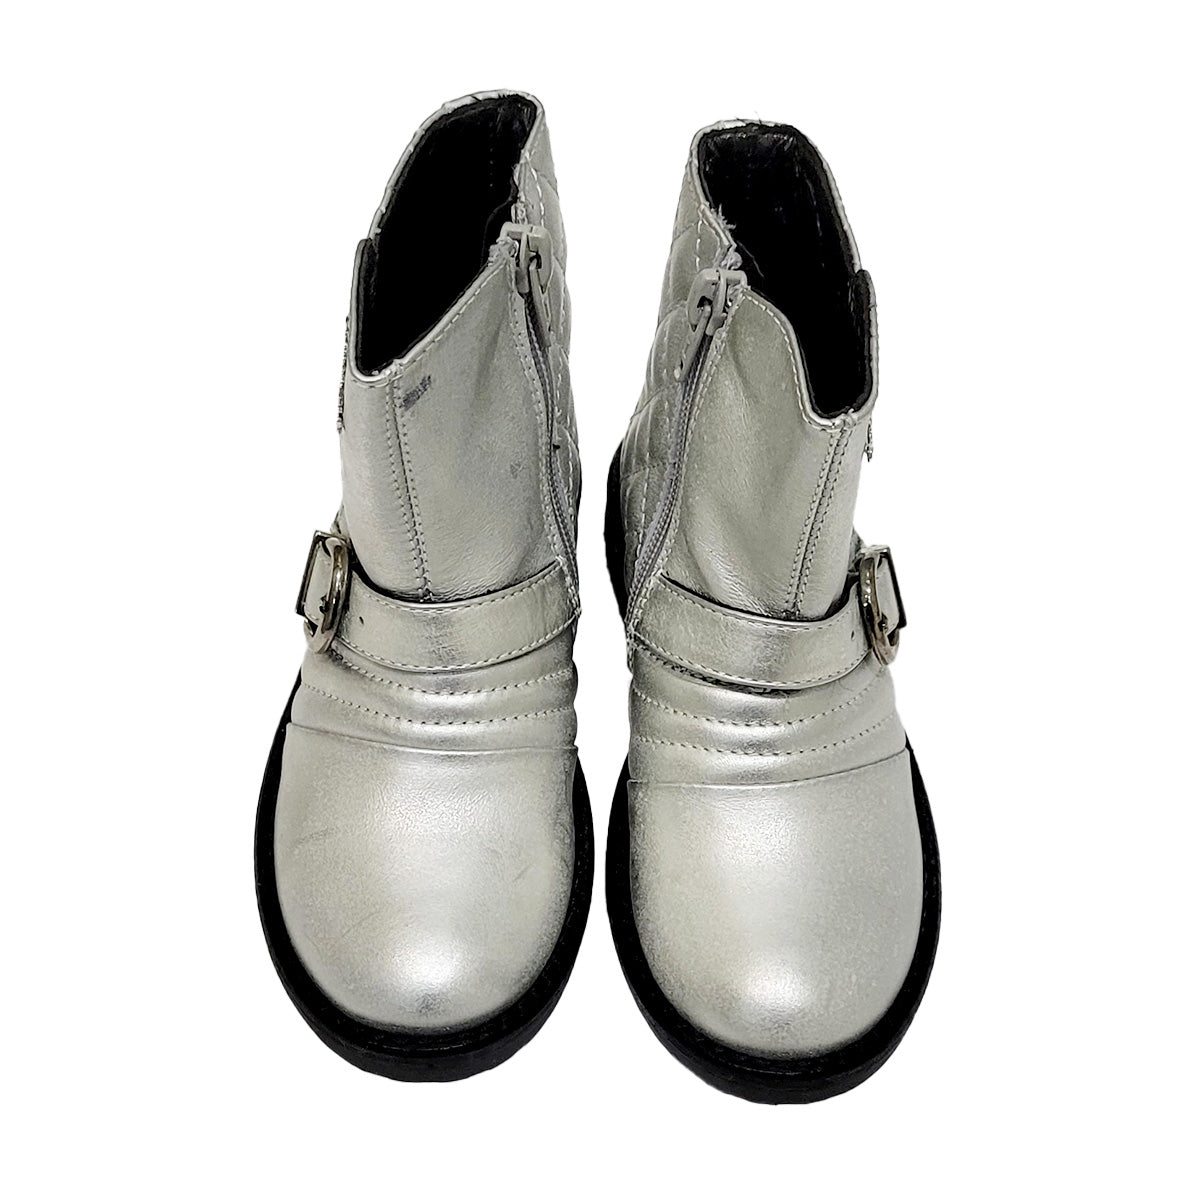 Simonetta Silver-colored boot